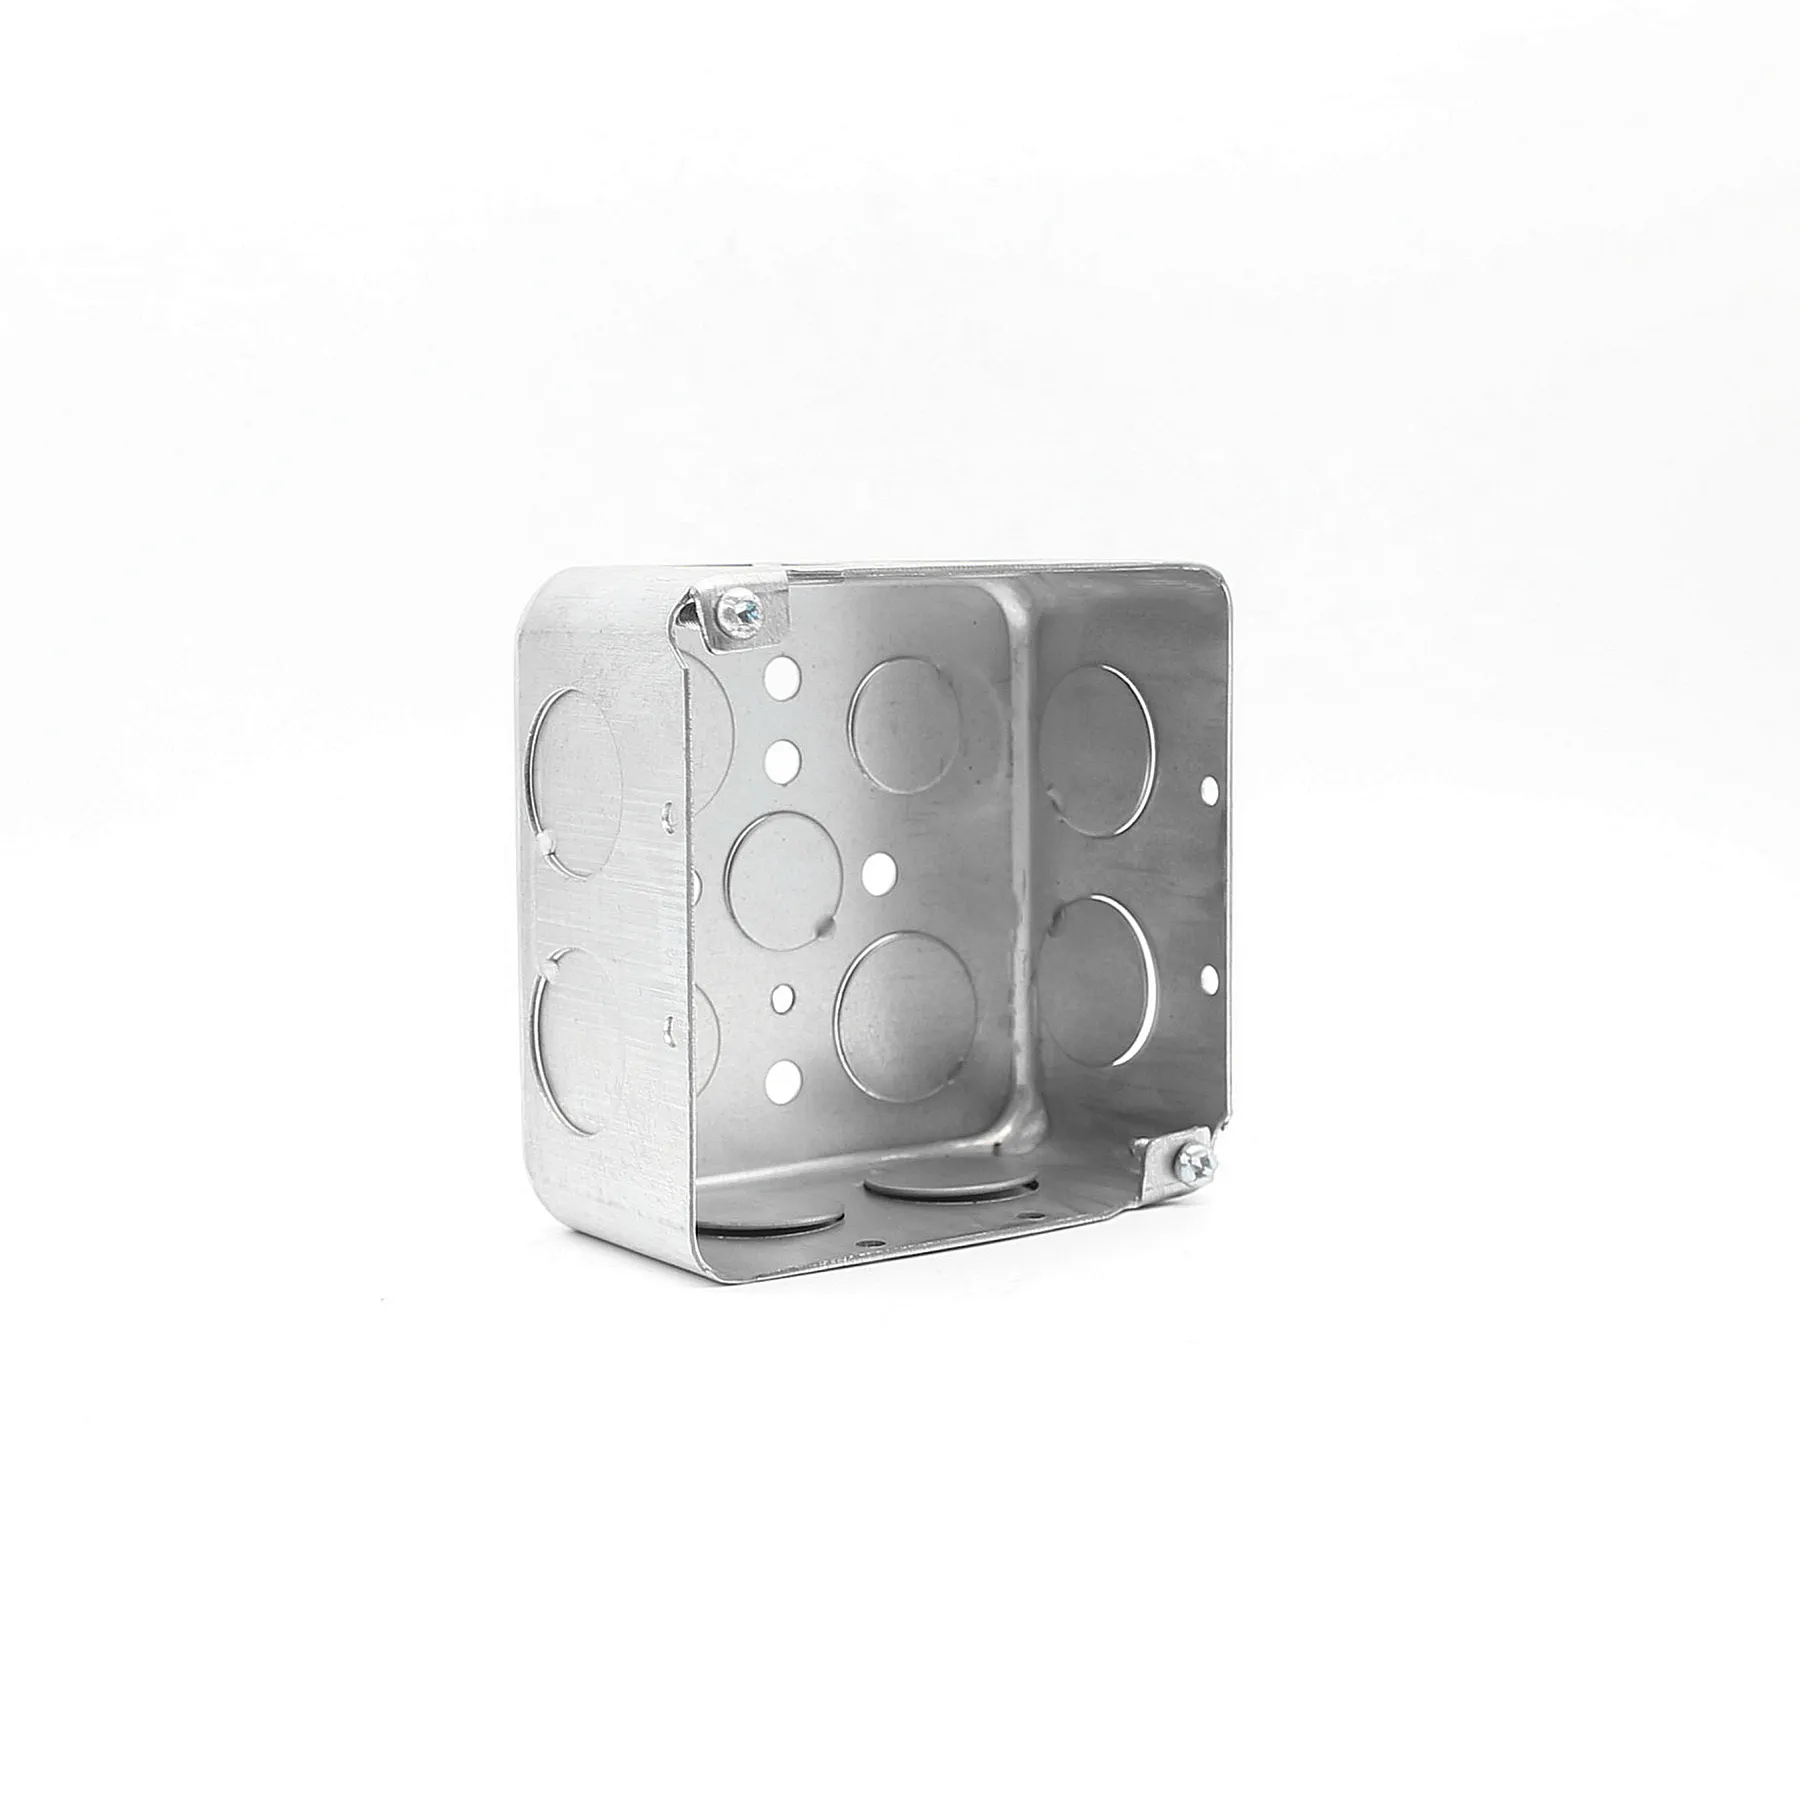 Caja cuadrada de Metal de 2 entradas y 4 pulgadas, caja con conductos y accesorios eléctricos